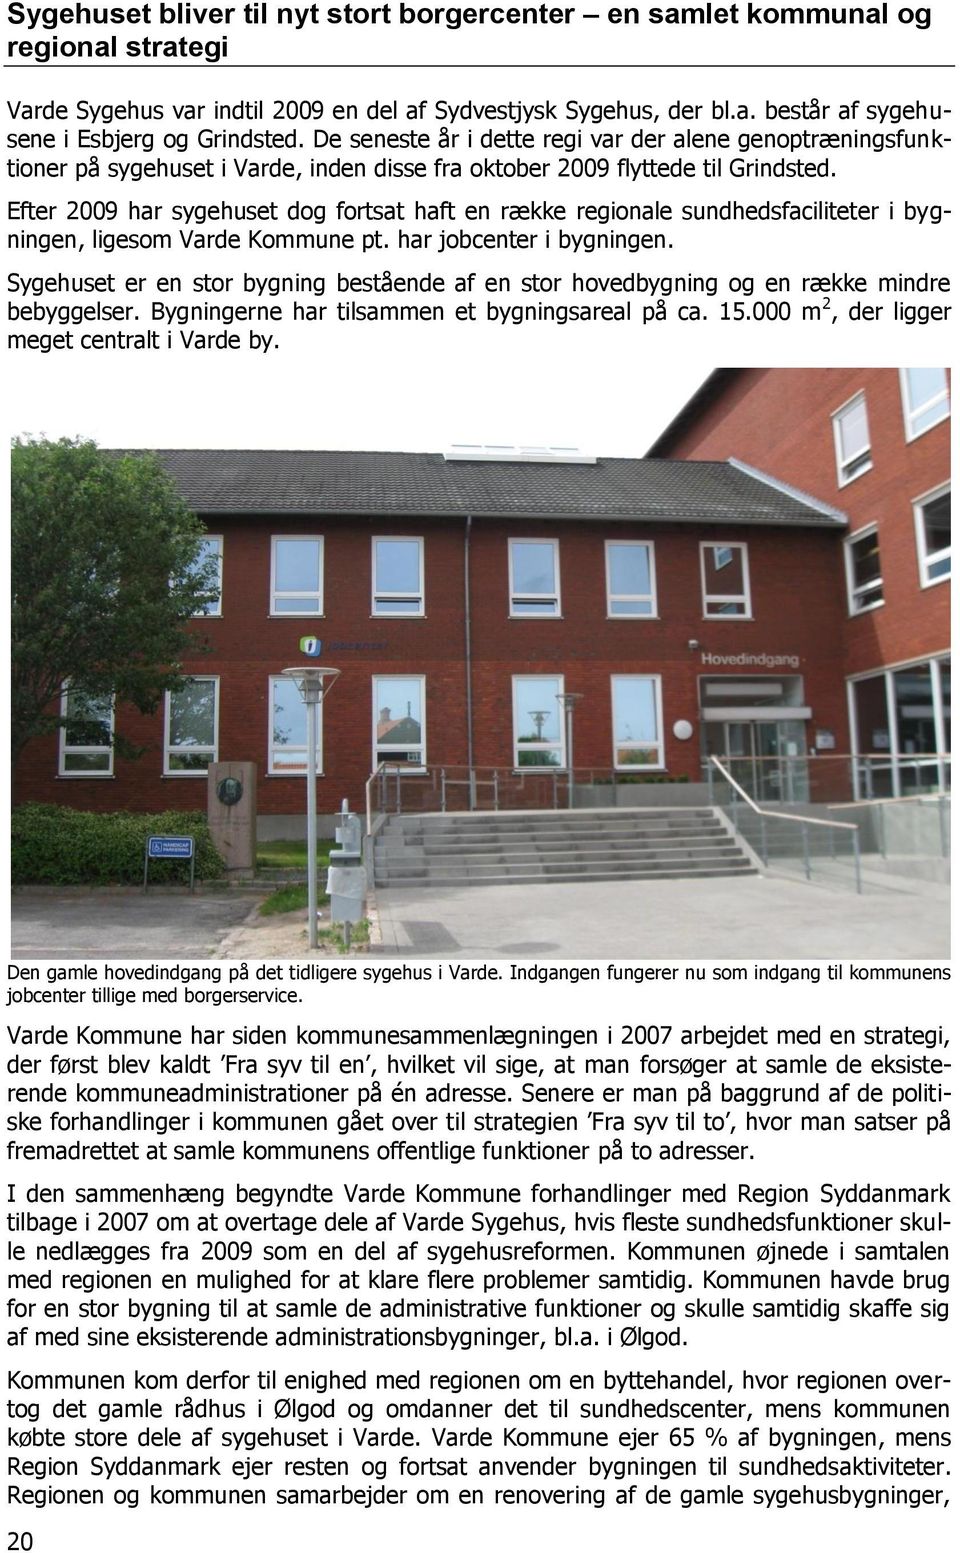 Efter 2009 har sygehuset dog fortsat haft en række regionale sundhedsfaciliteter i bygningen, ligesom Varde Kommune pt. har jobcenter i bygningen.